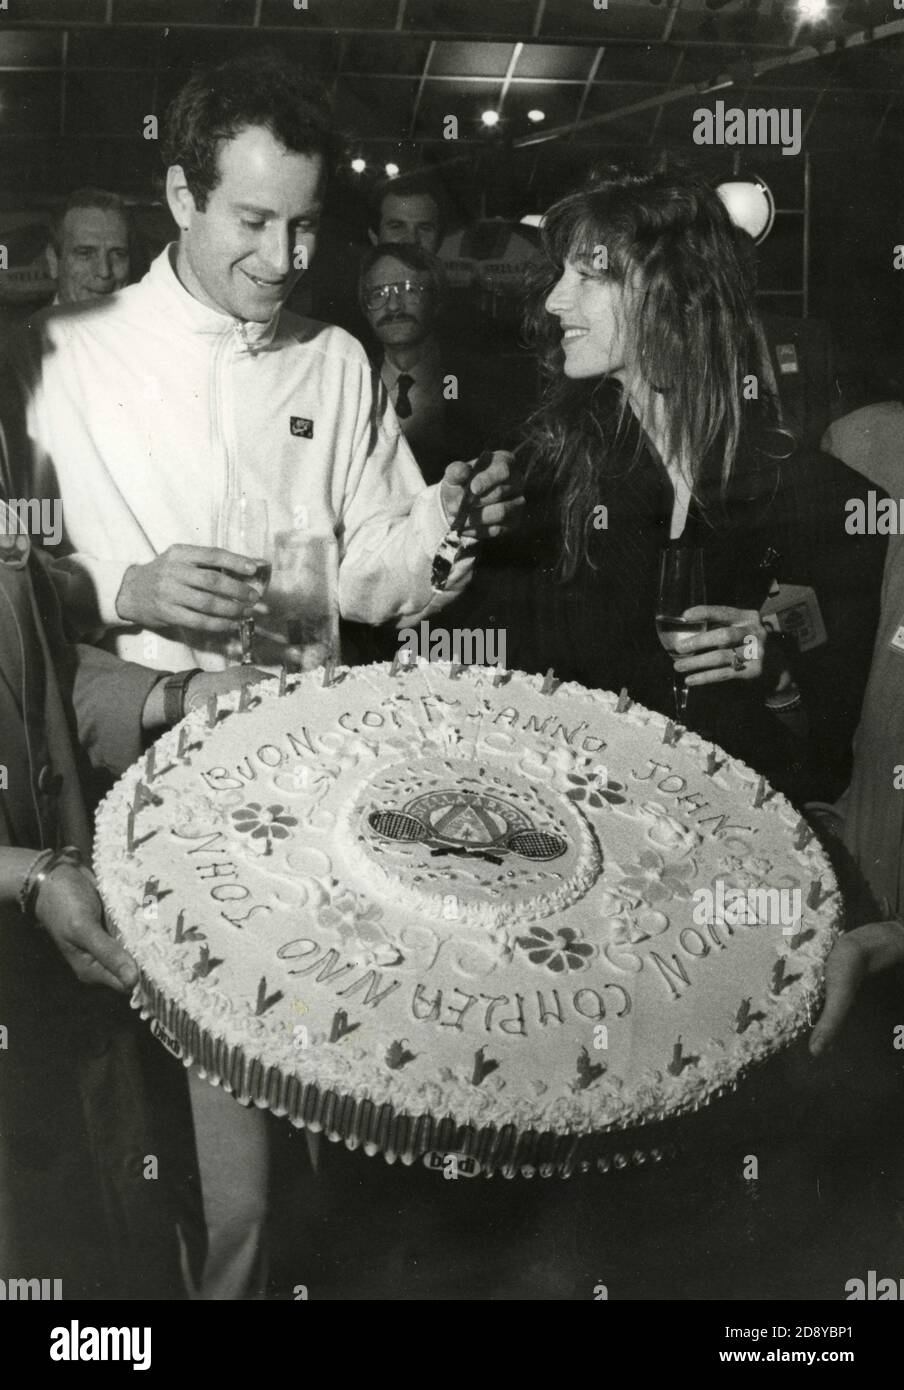 El tenista estadounidense John McEnroe y la esposa Tatum o'Neal con su pastel de cumpleaños, 1980 Foto de stock